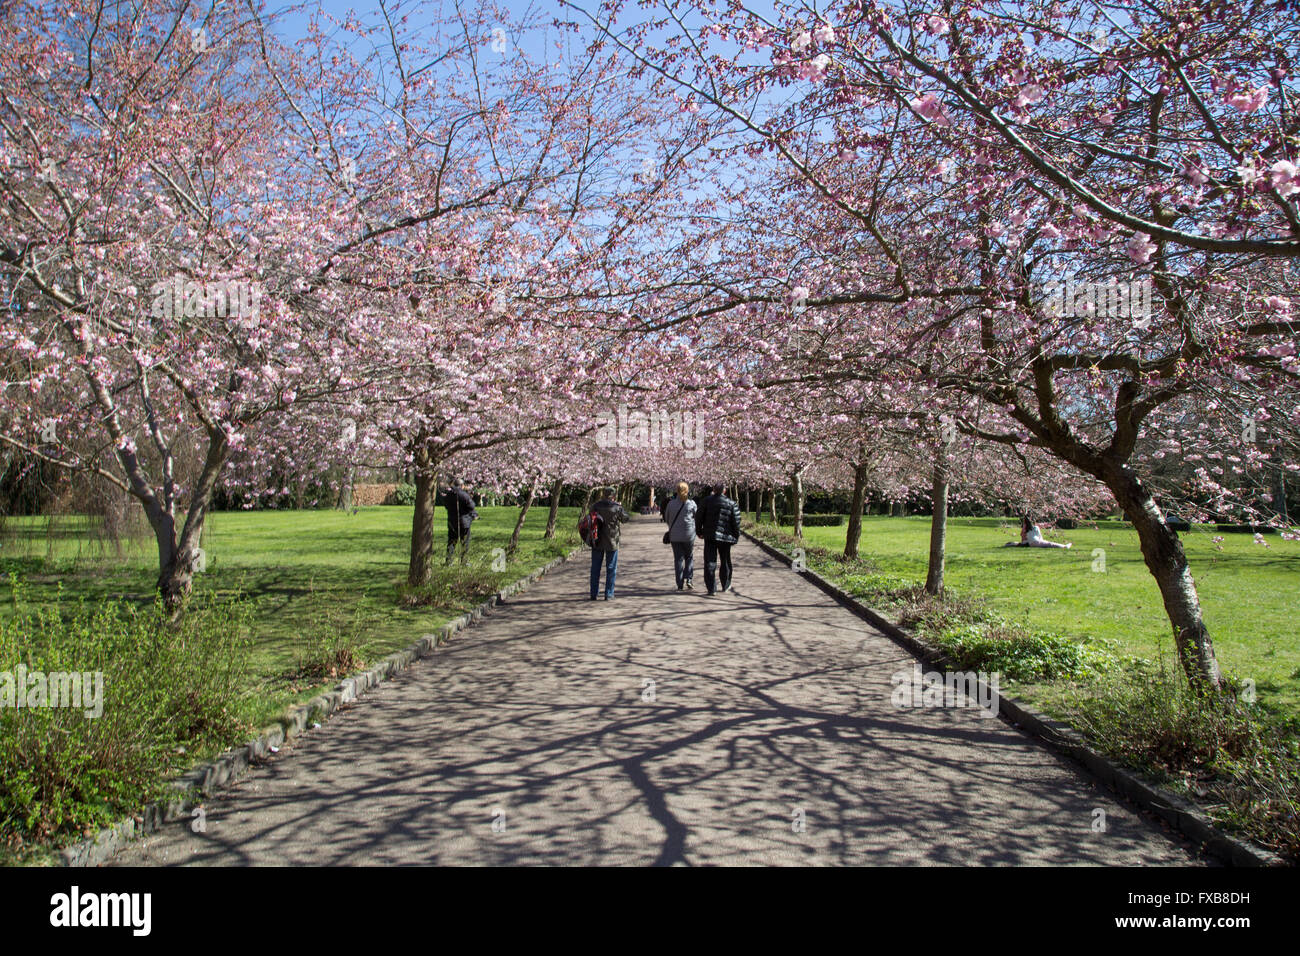 Copenhague, Dinamarca - 11 de abril de 2016: gente disfrutando de los cerezos en flor en Bispebjerg cementerio. Foto de stock